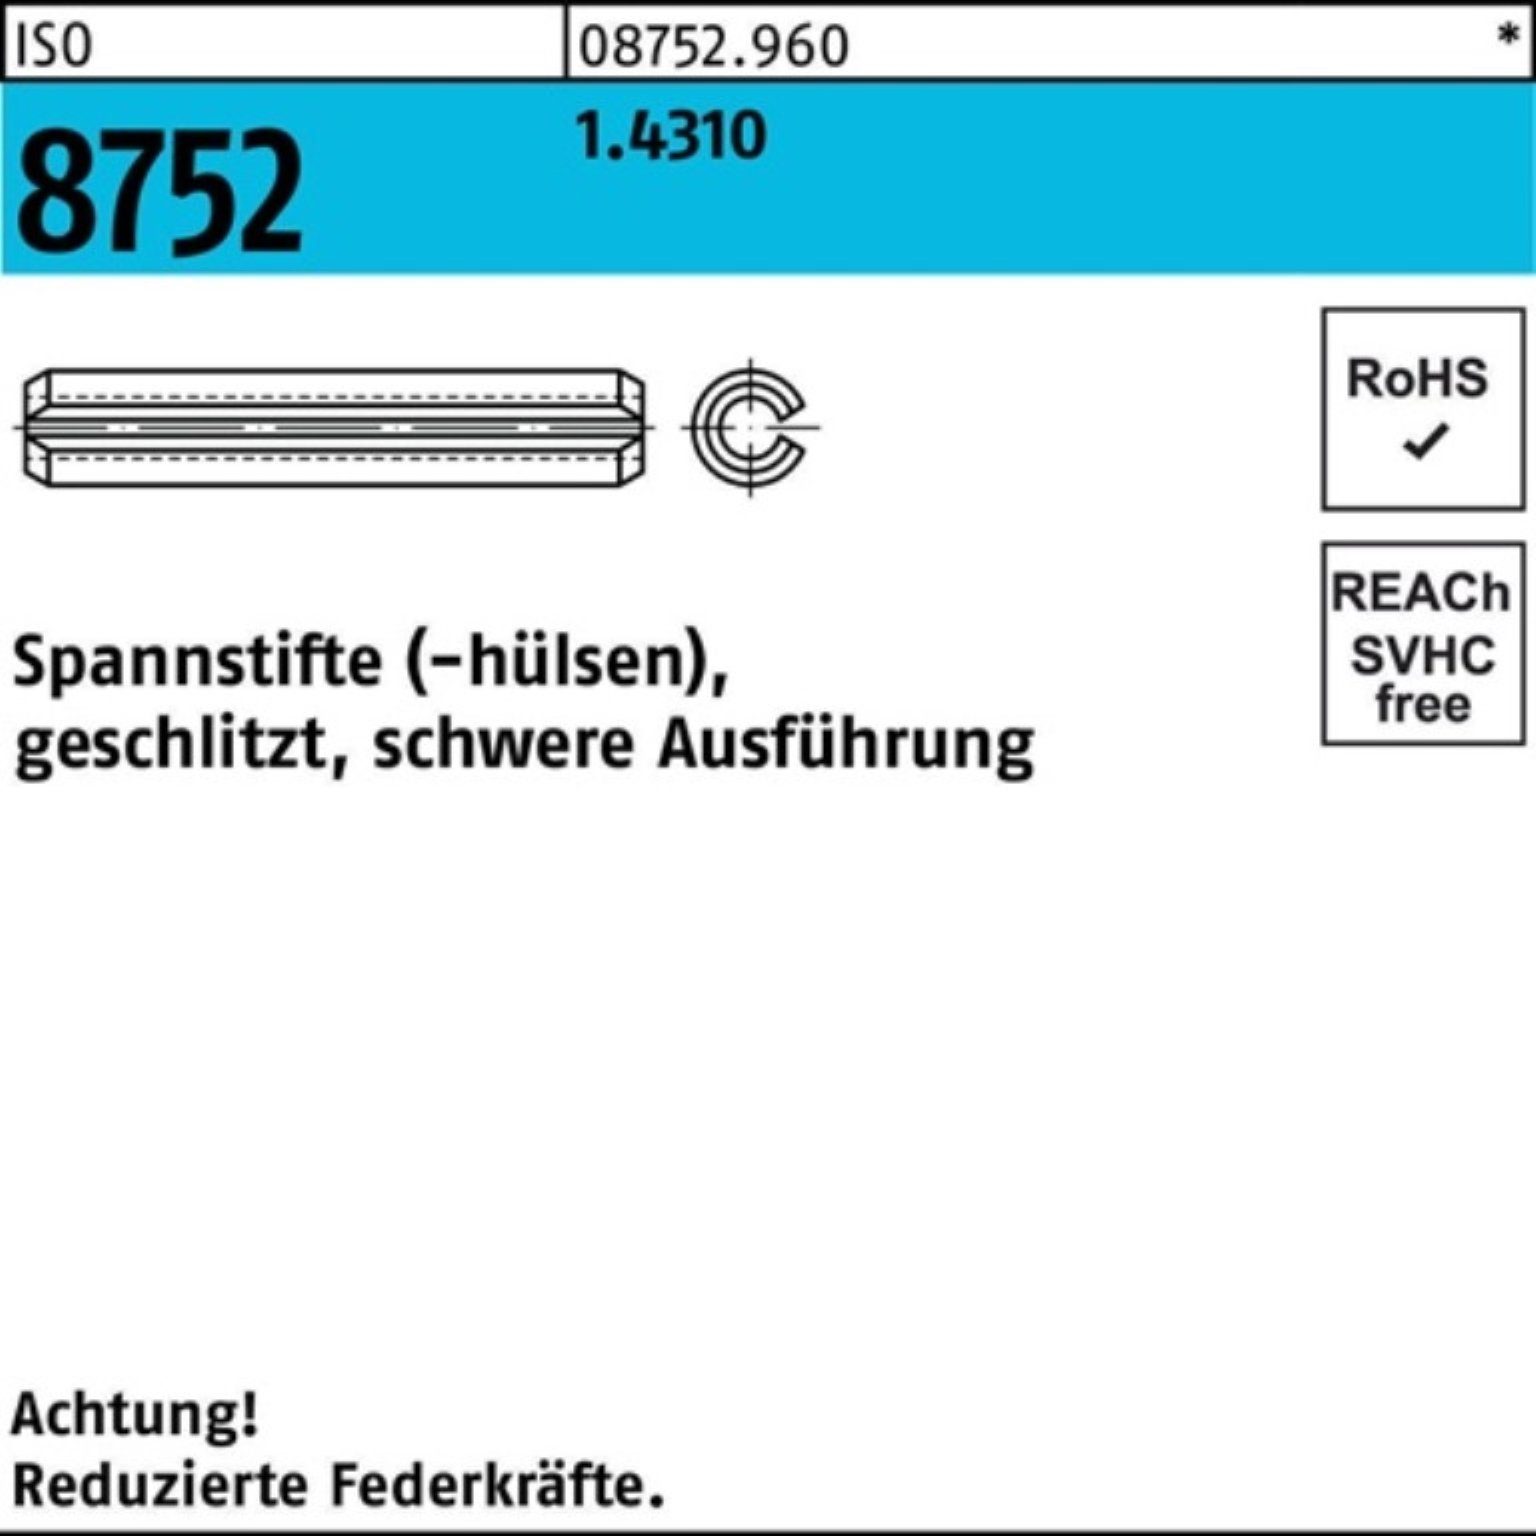 Spannstift Spannstift Ausf. 80 6x geschlitzt 8752 100er Reyher Pack ISO schwere 2 1.4310